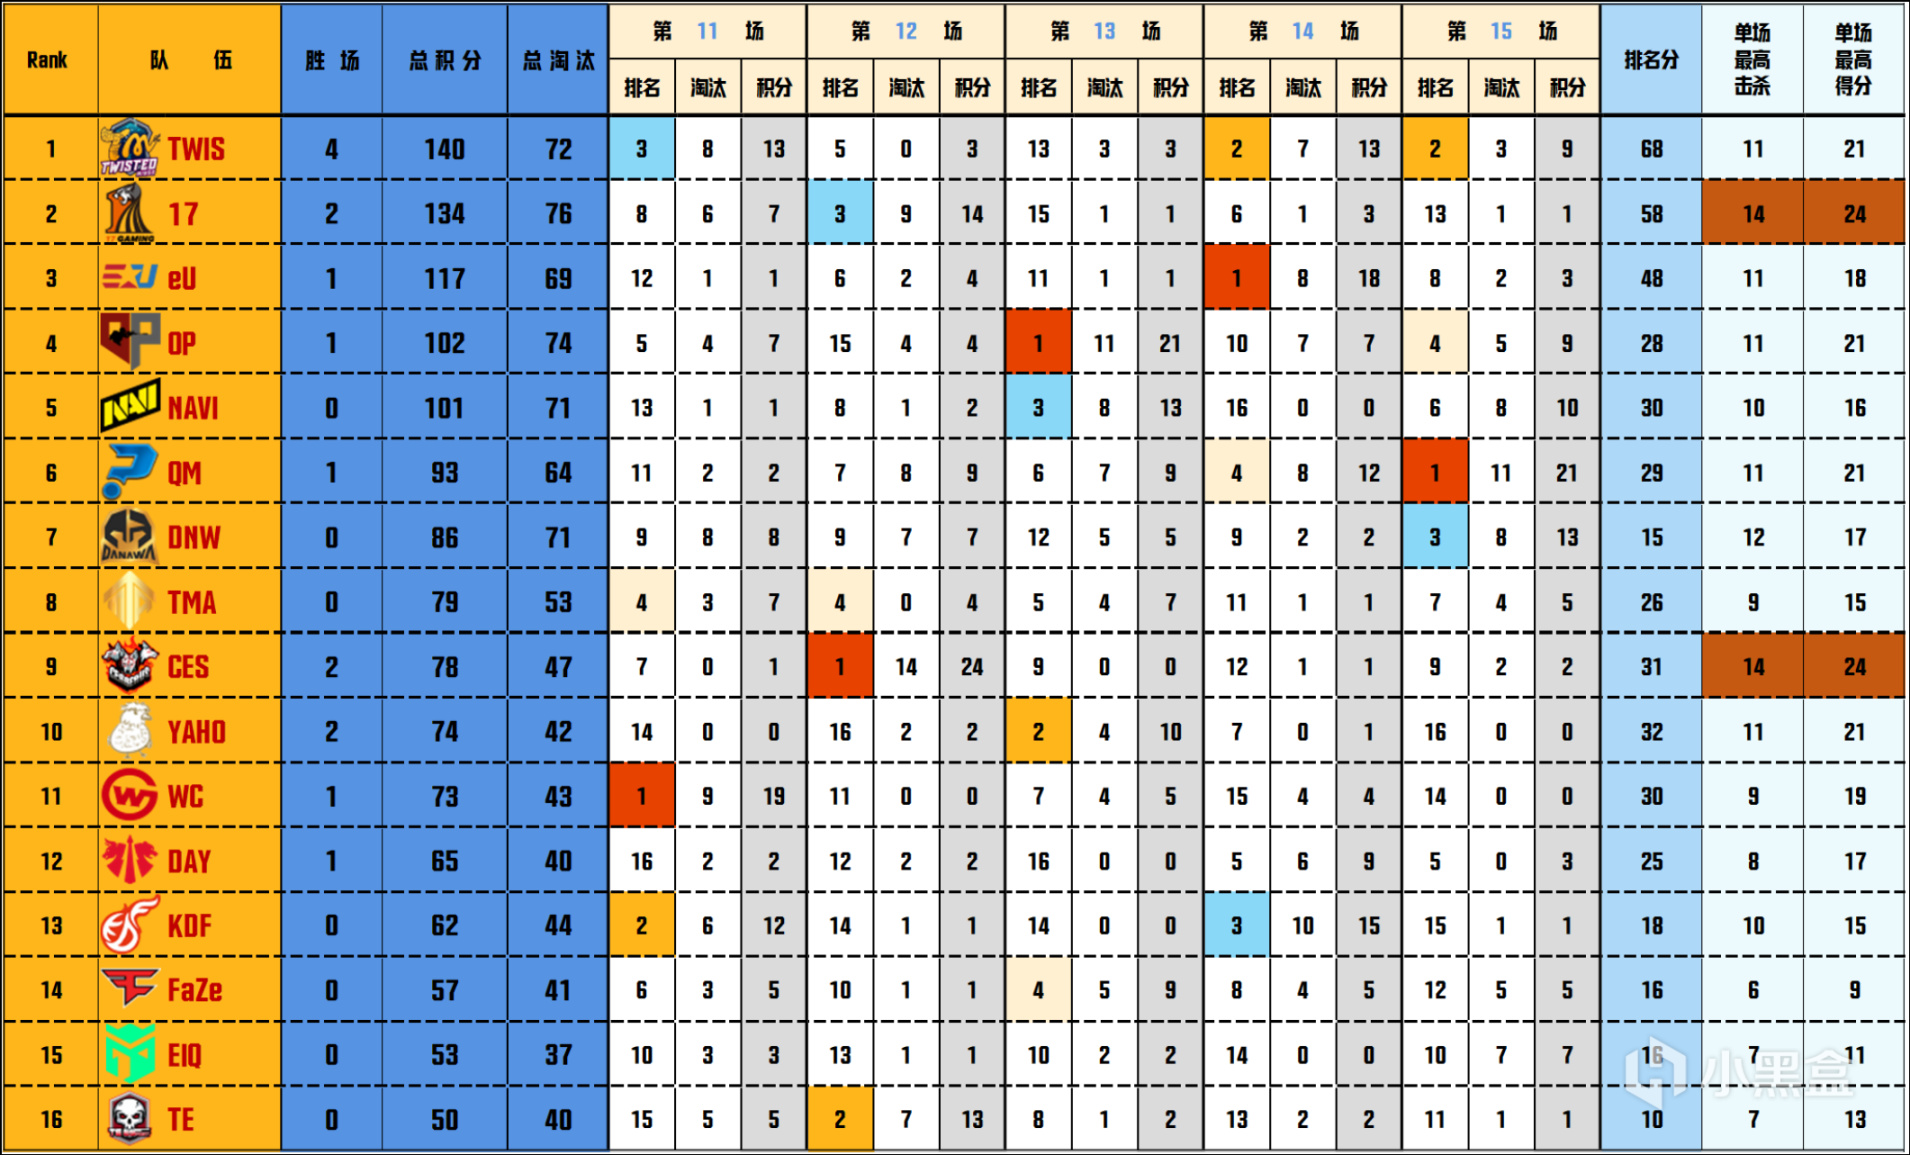 【数据流】PGC决赛D3/4,TWIS 140分来到榜首,DNW_seoul战神31淘汰-第1张